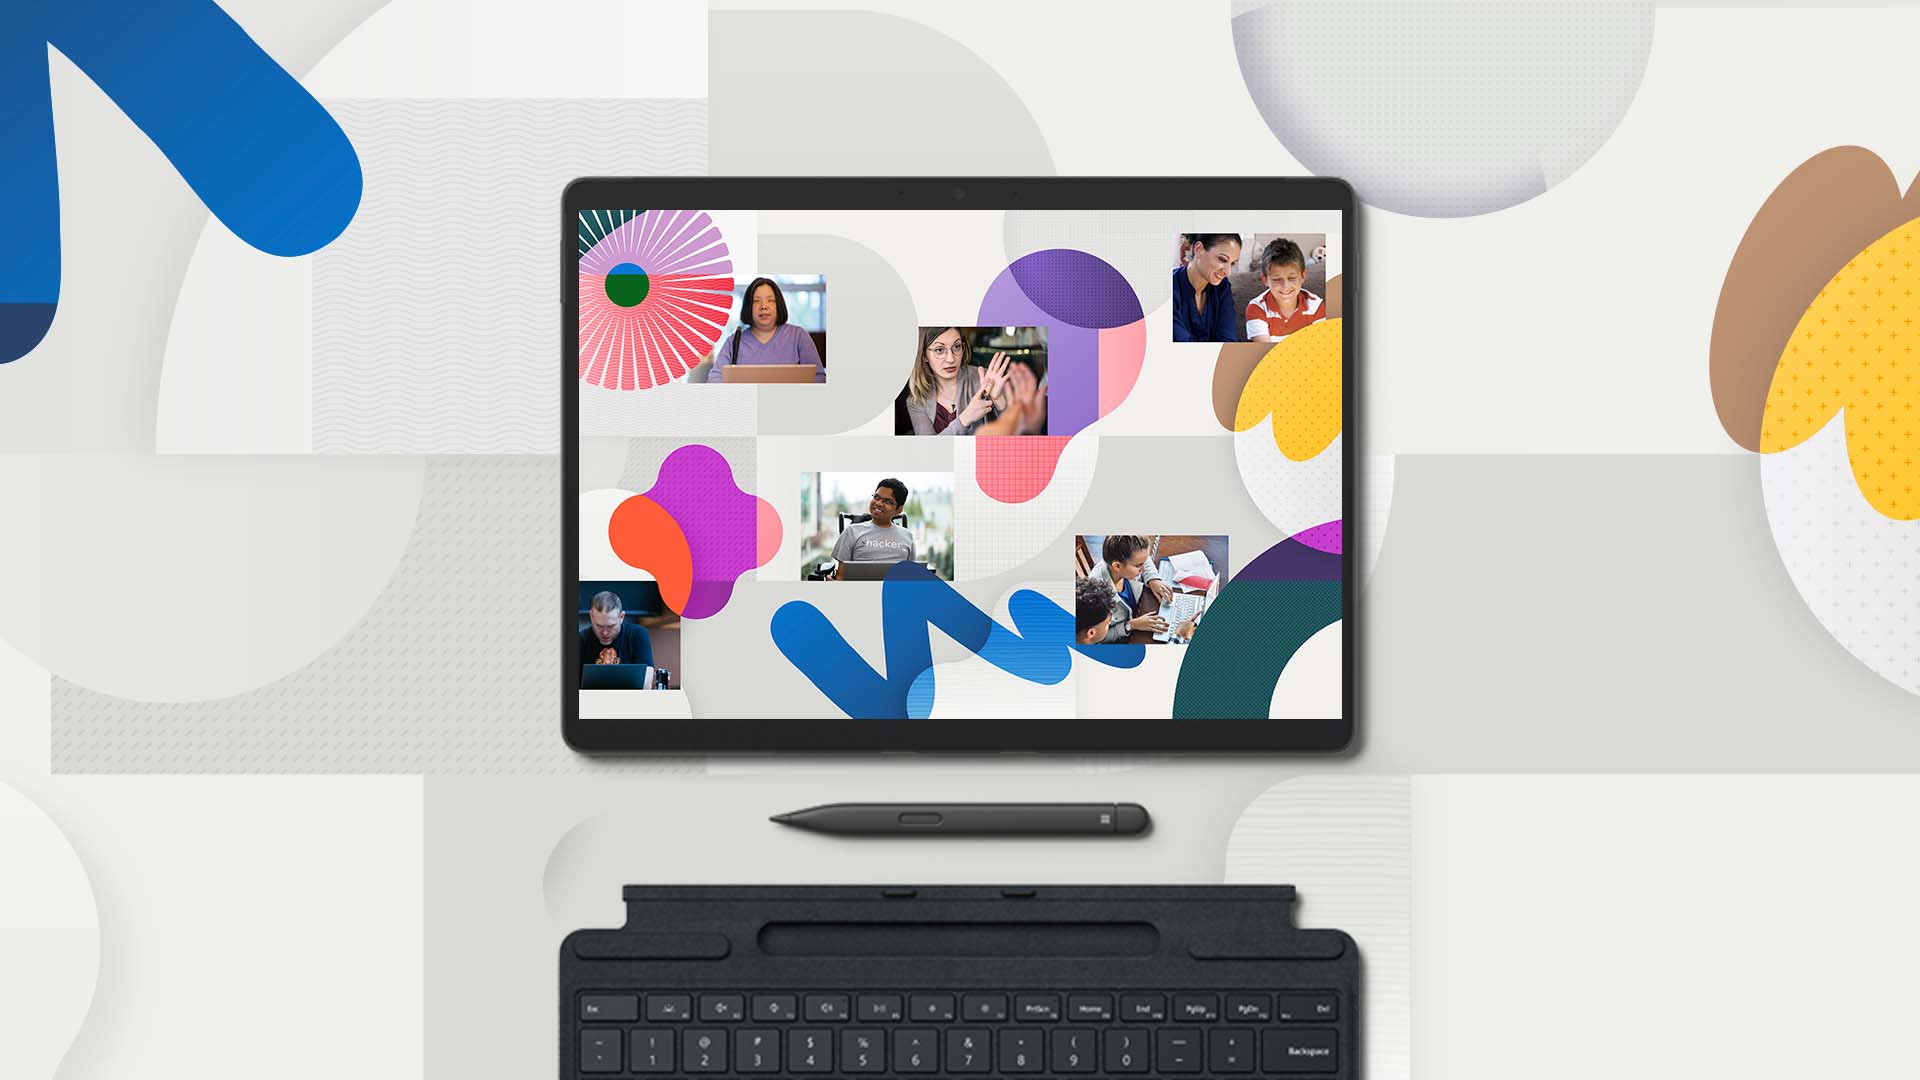 يتم عرض مجموعة من الأشخاص يتعلمون ويعملون على جهاز Surface Pro 8 وباستخدام قلم Surface مع لوحة مفاتيح متصلة بالجهاز من أسفل. الصورة مُحاطة بخطوط زاهية تعبر عن الفن التجريدي.